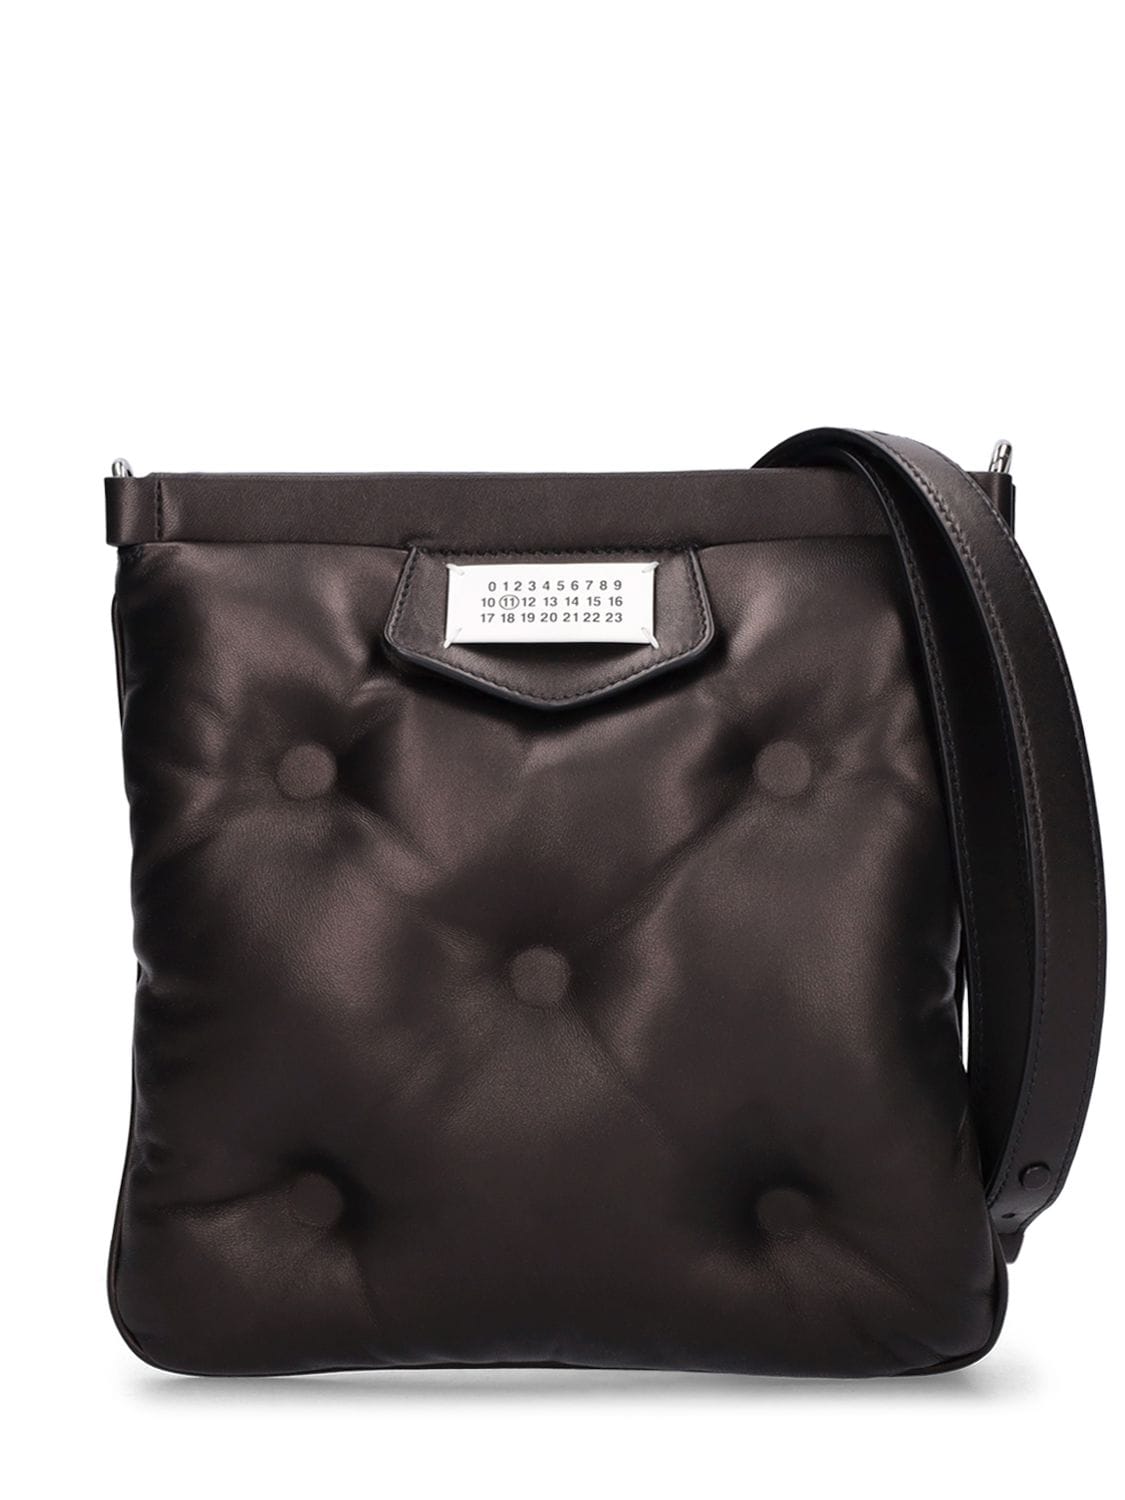 Maison Margiela Glam Slam Leather Messenger Bag In Black